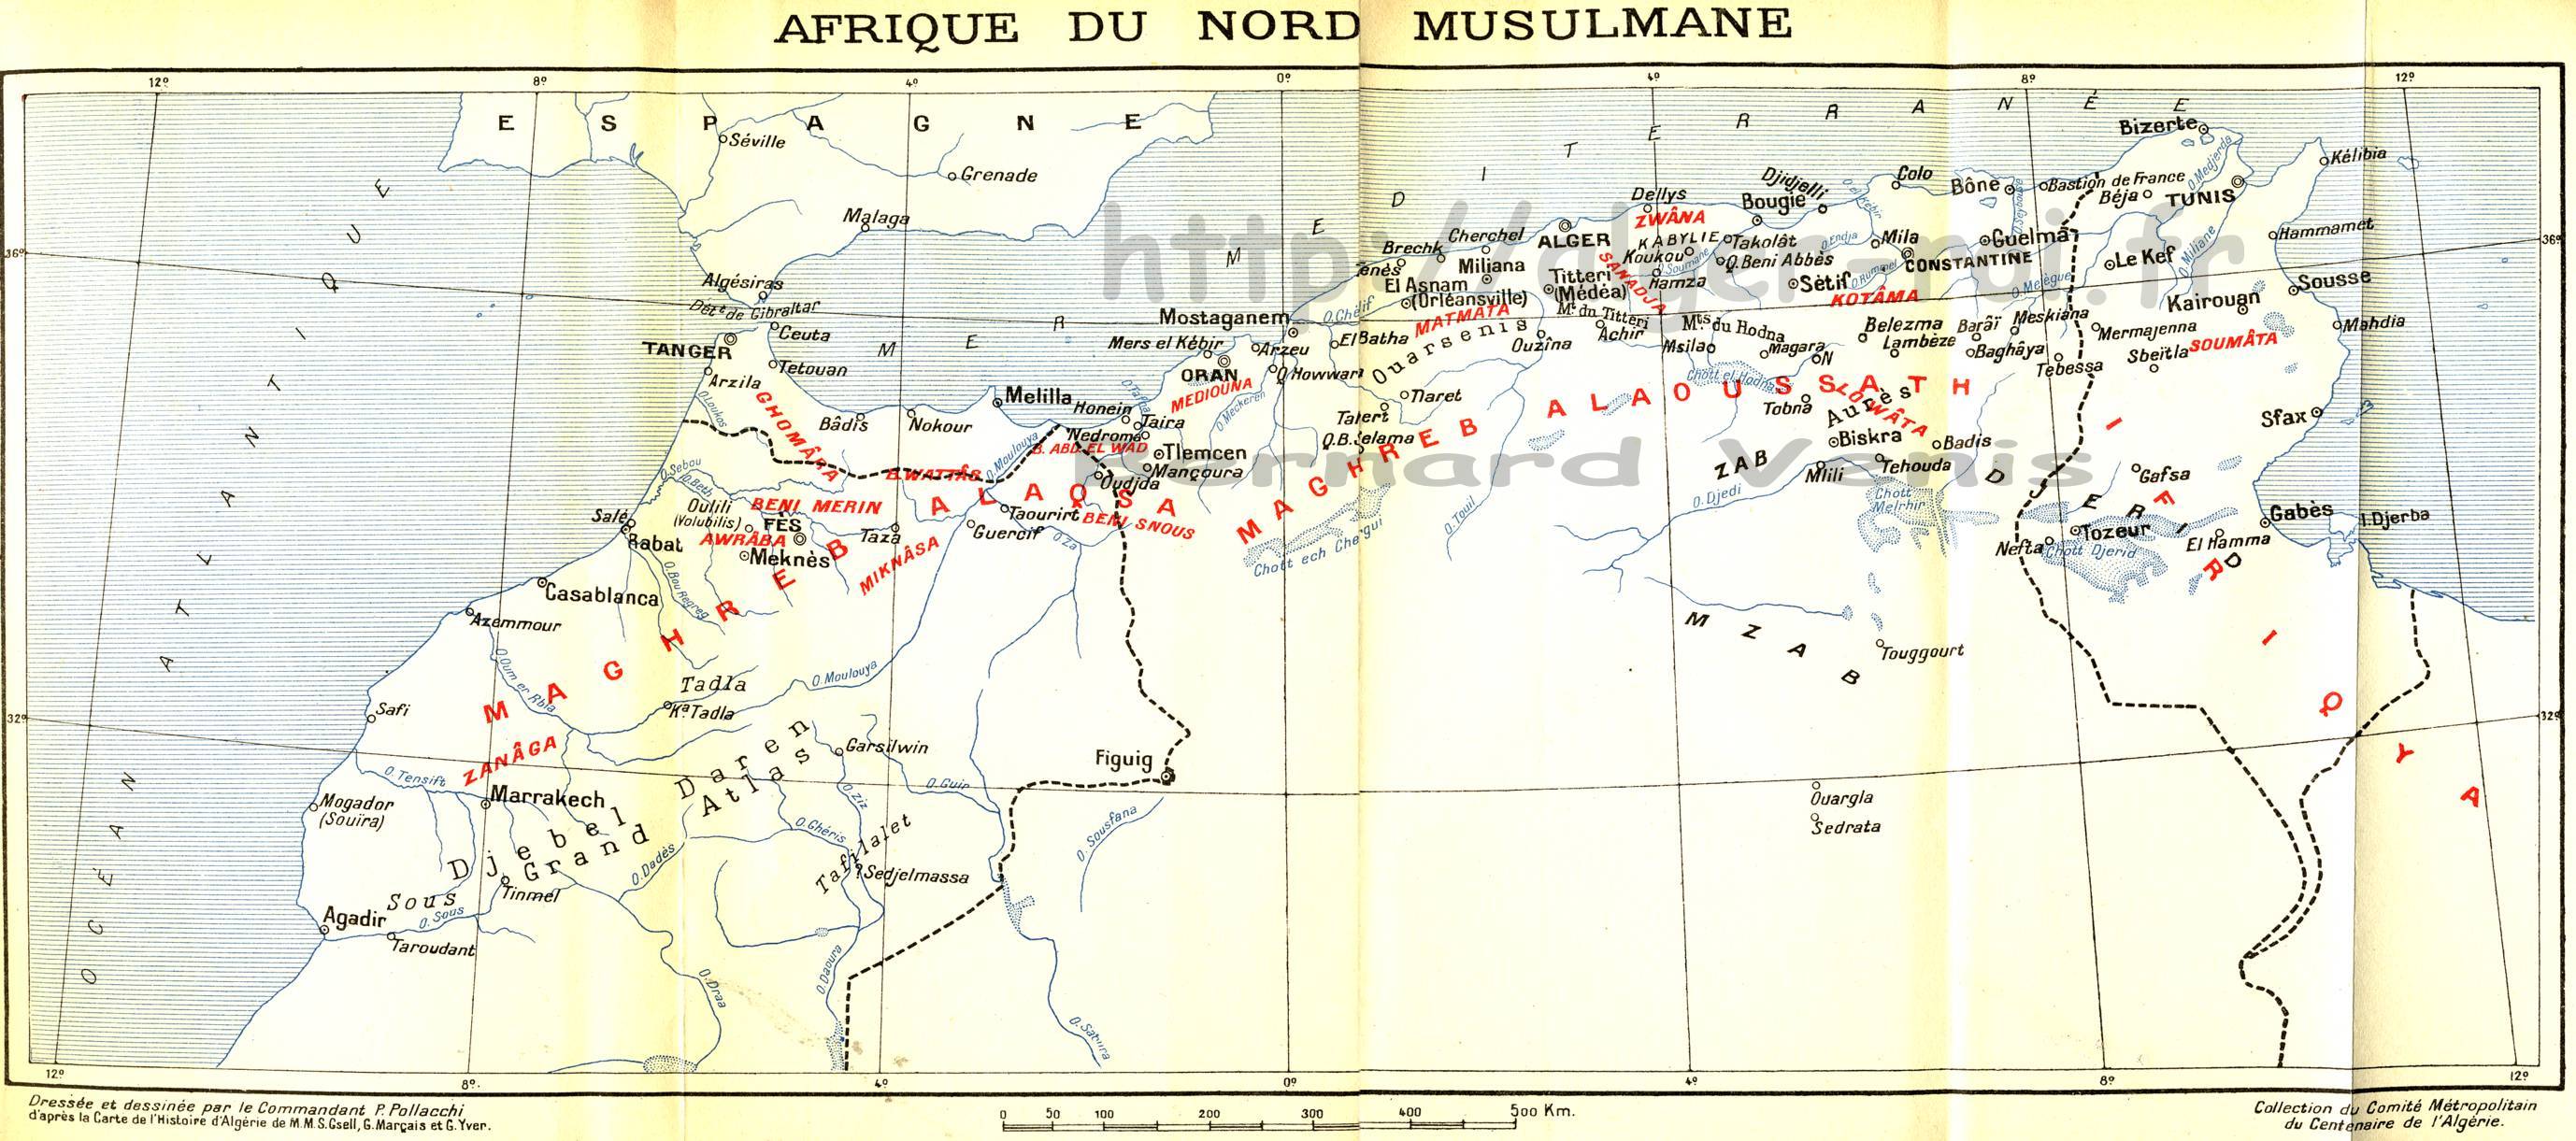 Afrique du nord musulmane